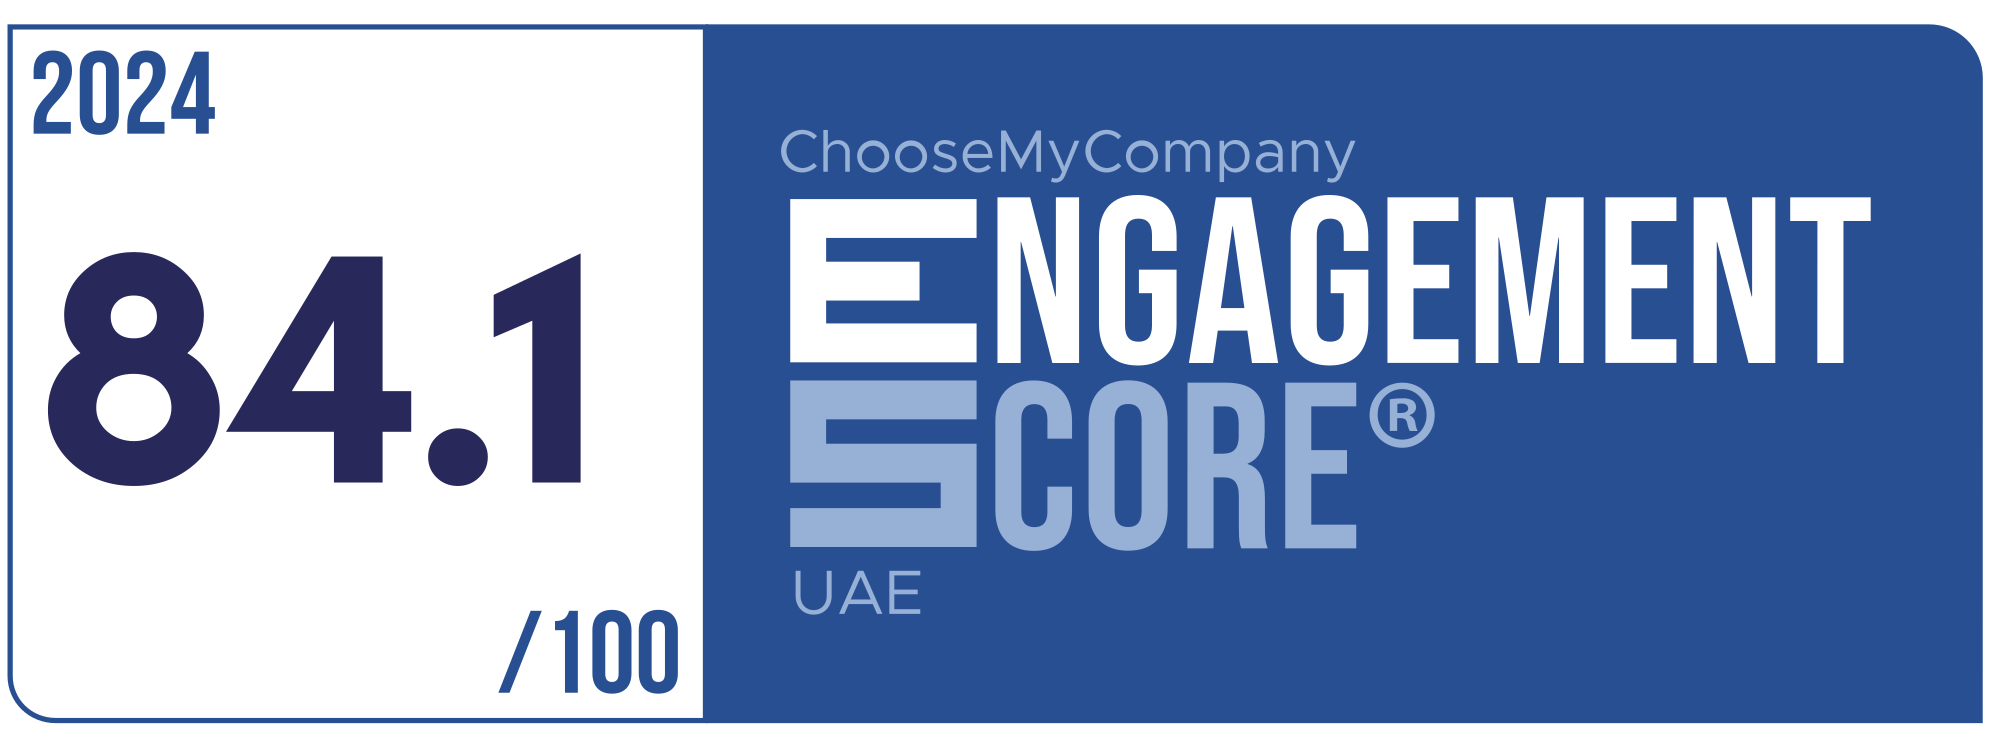 Label Engagement Score 2024 UAE